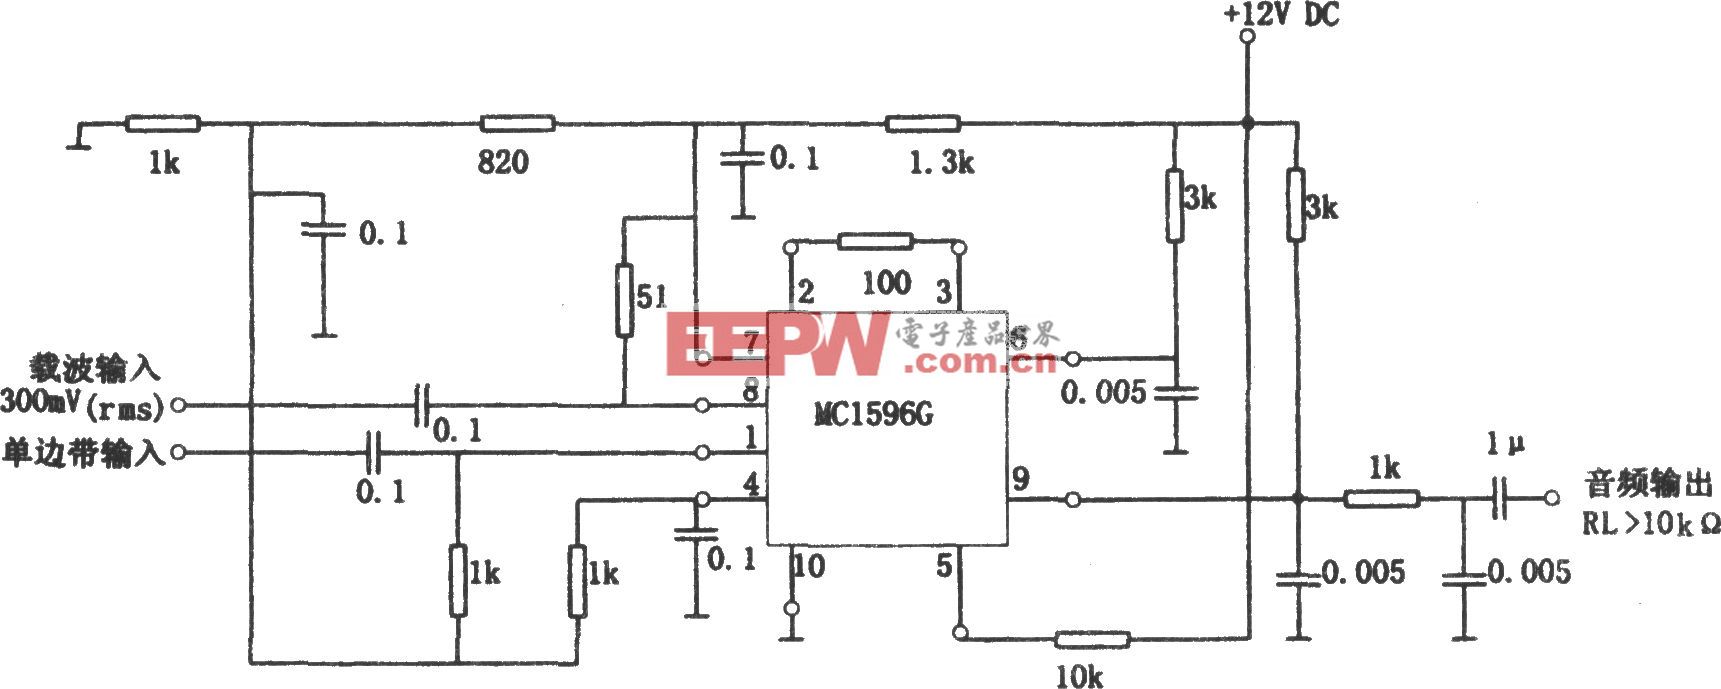 无变压器乘积检波电路(MC1596G)